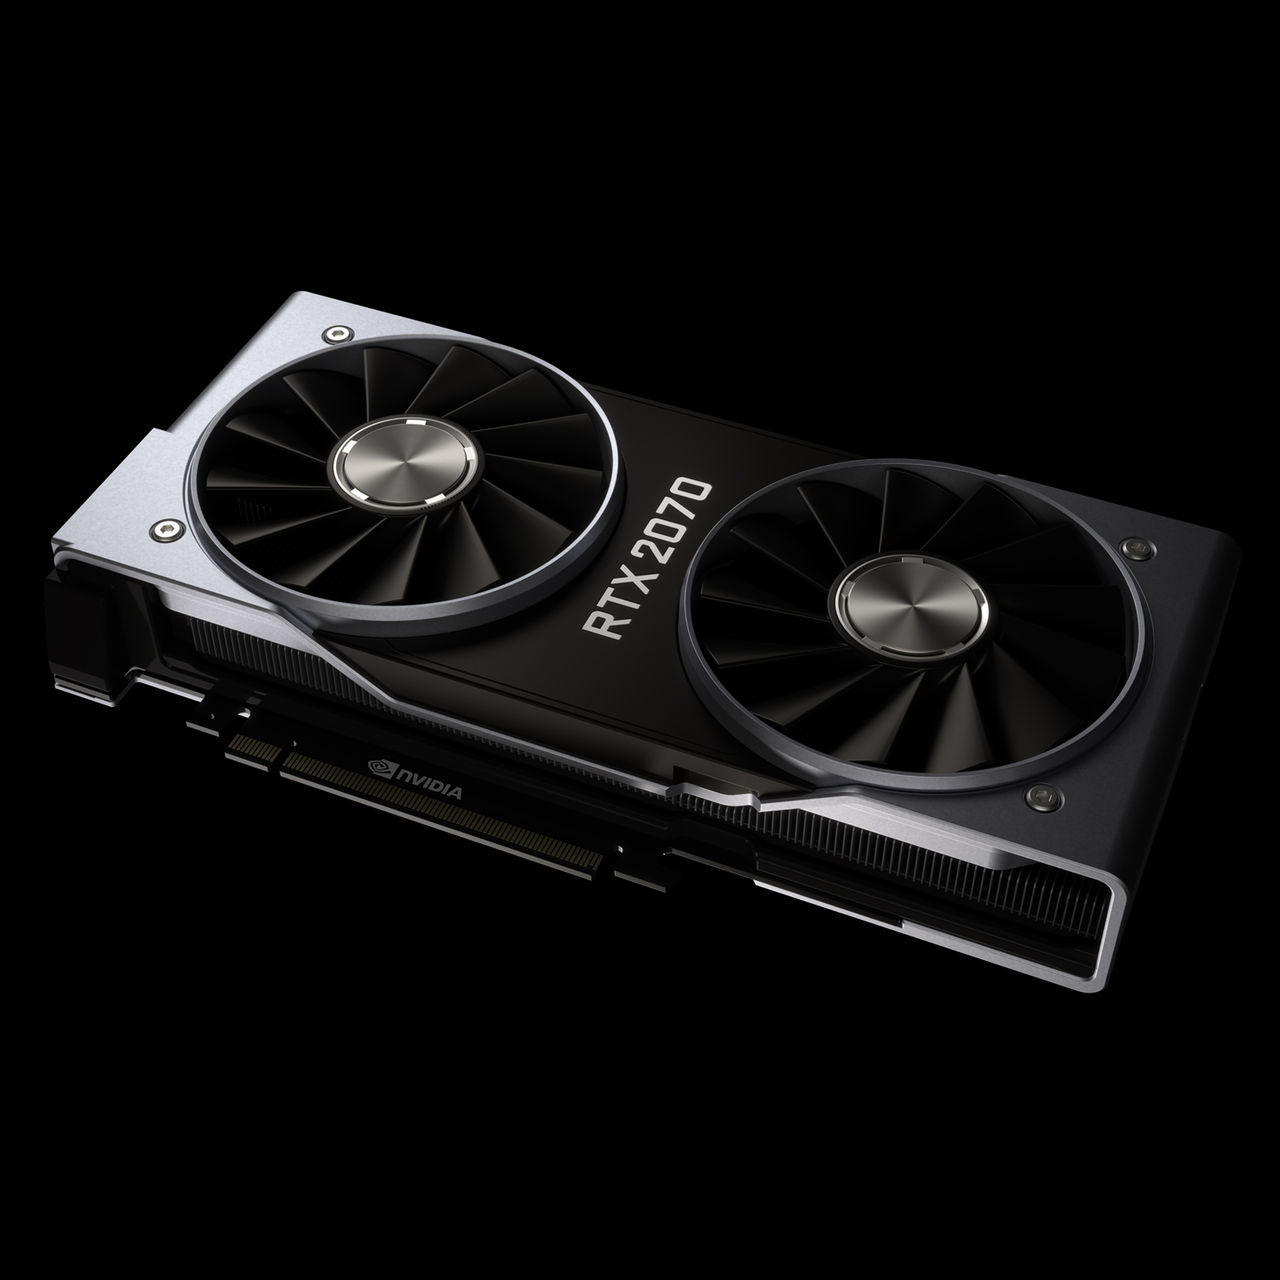 NVIDIA GeForce RTX 2070 ya es oficial y costará 639 euros